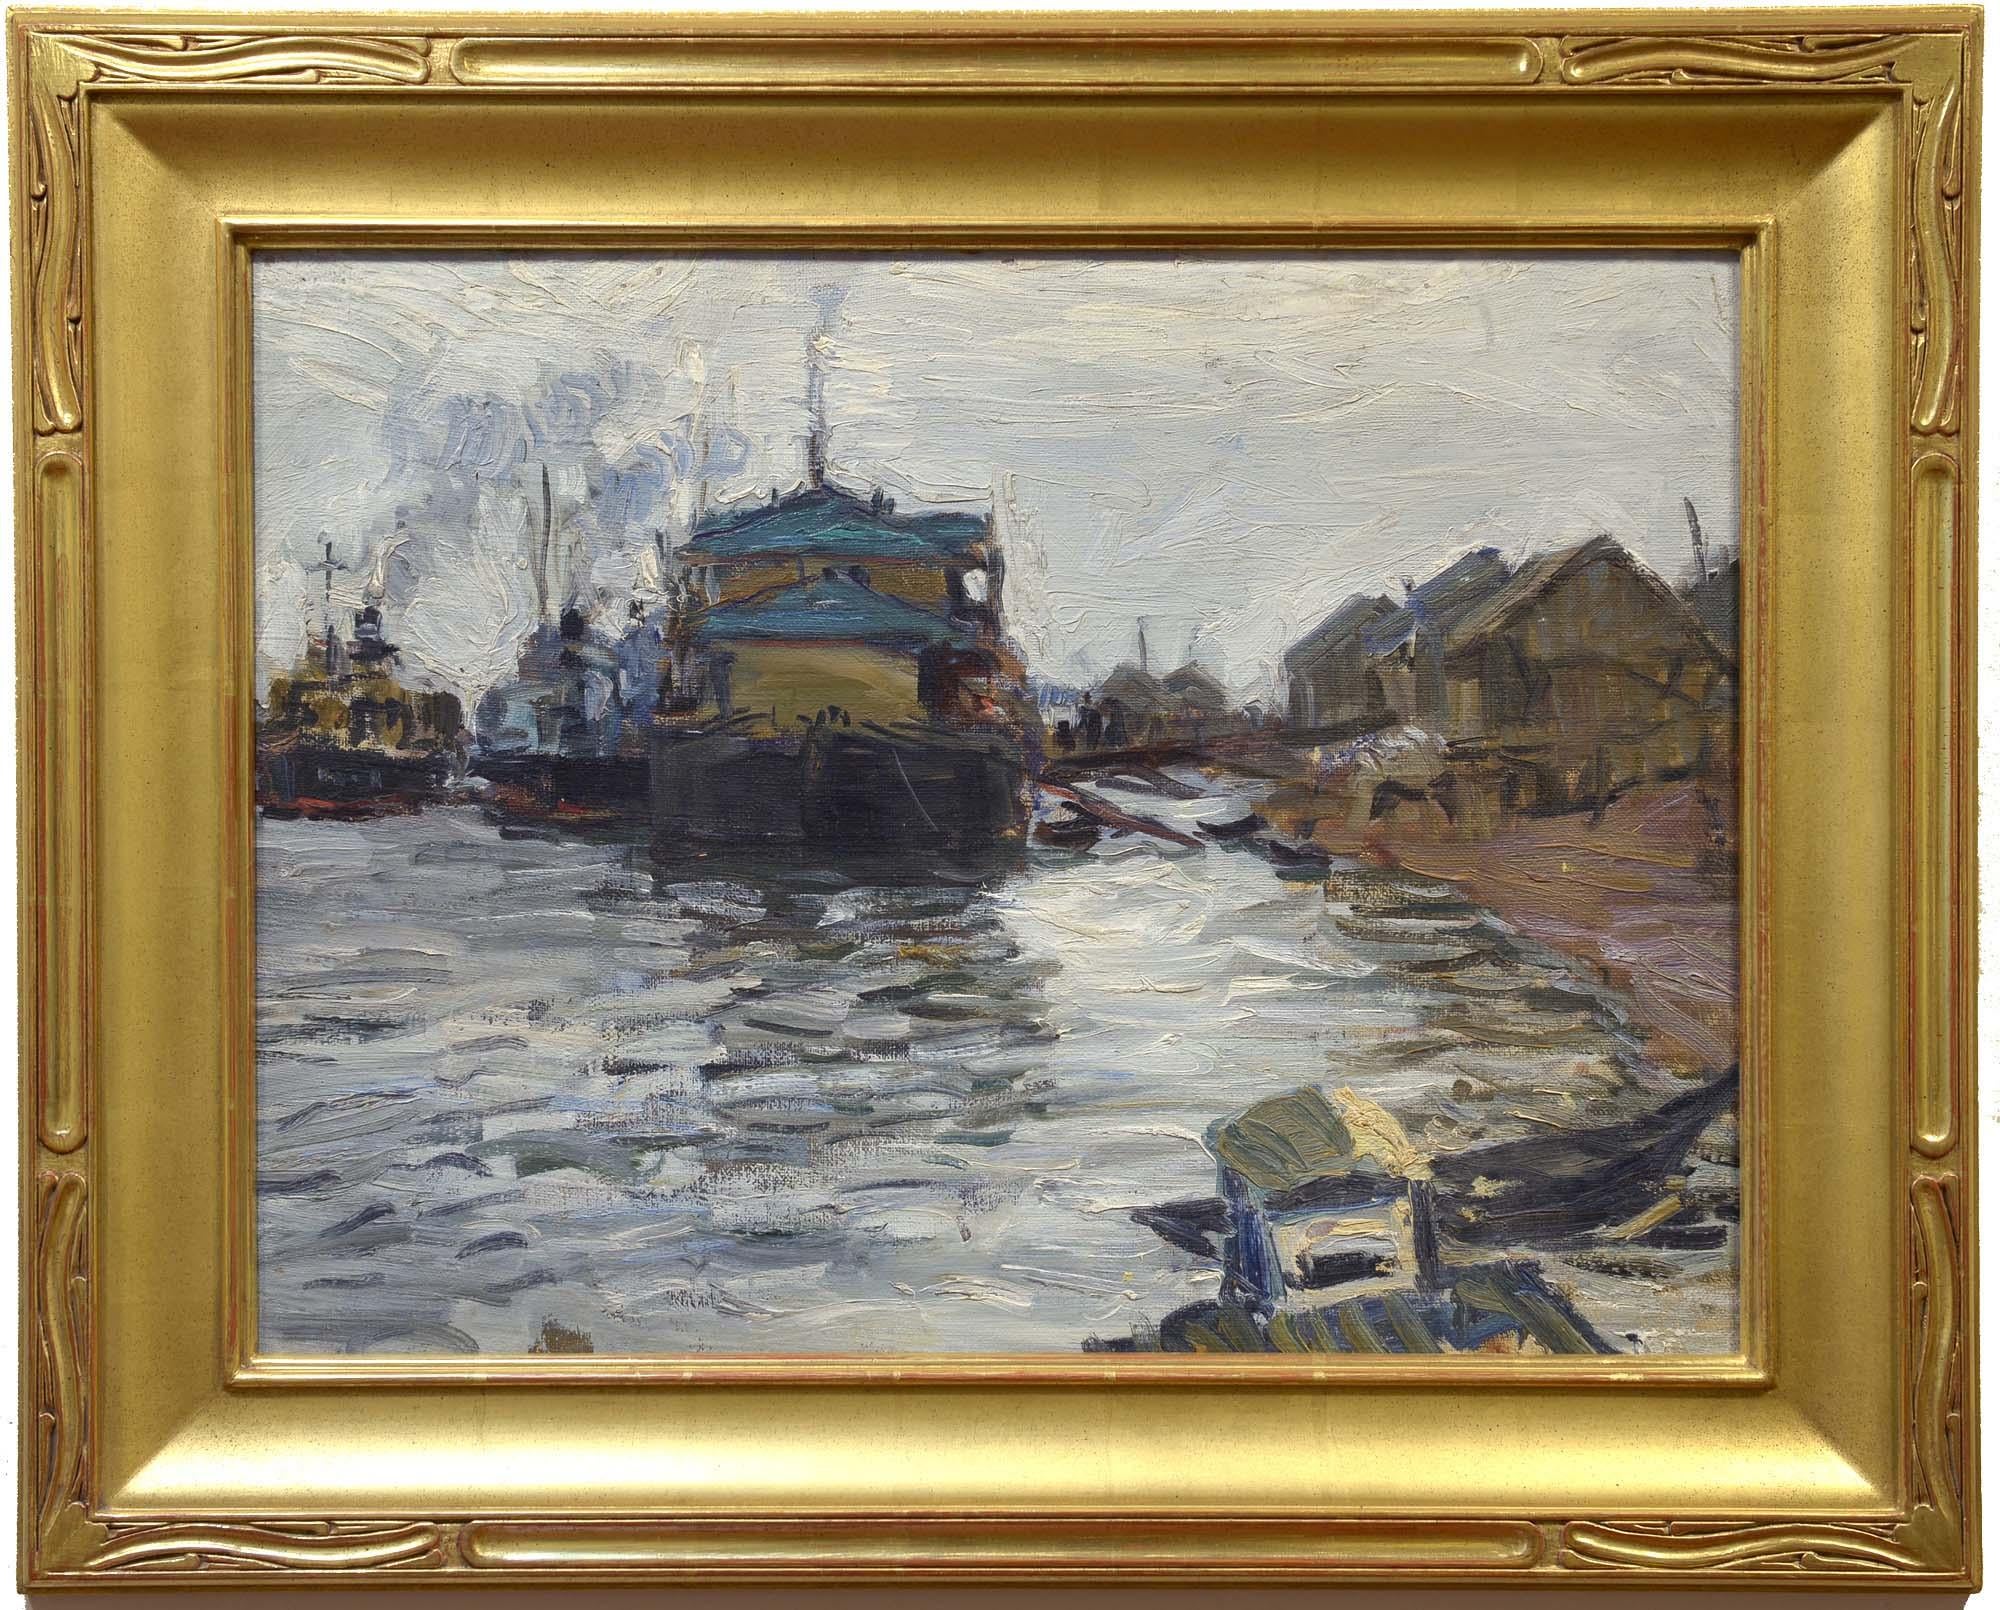 harf am Fluss Volga, Öl auf Leinwand, russischer Impressionismus – Painting von Nikolai Matsedonsky